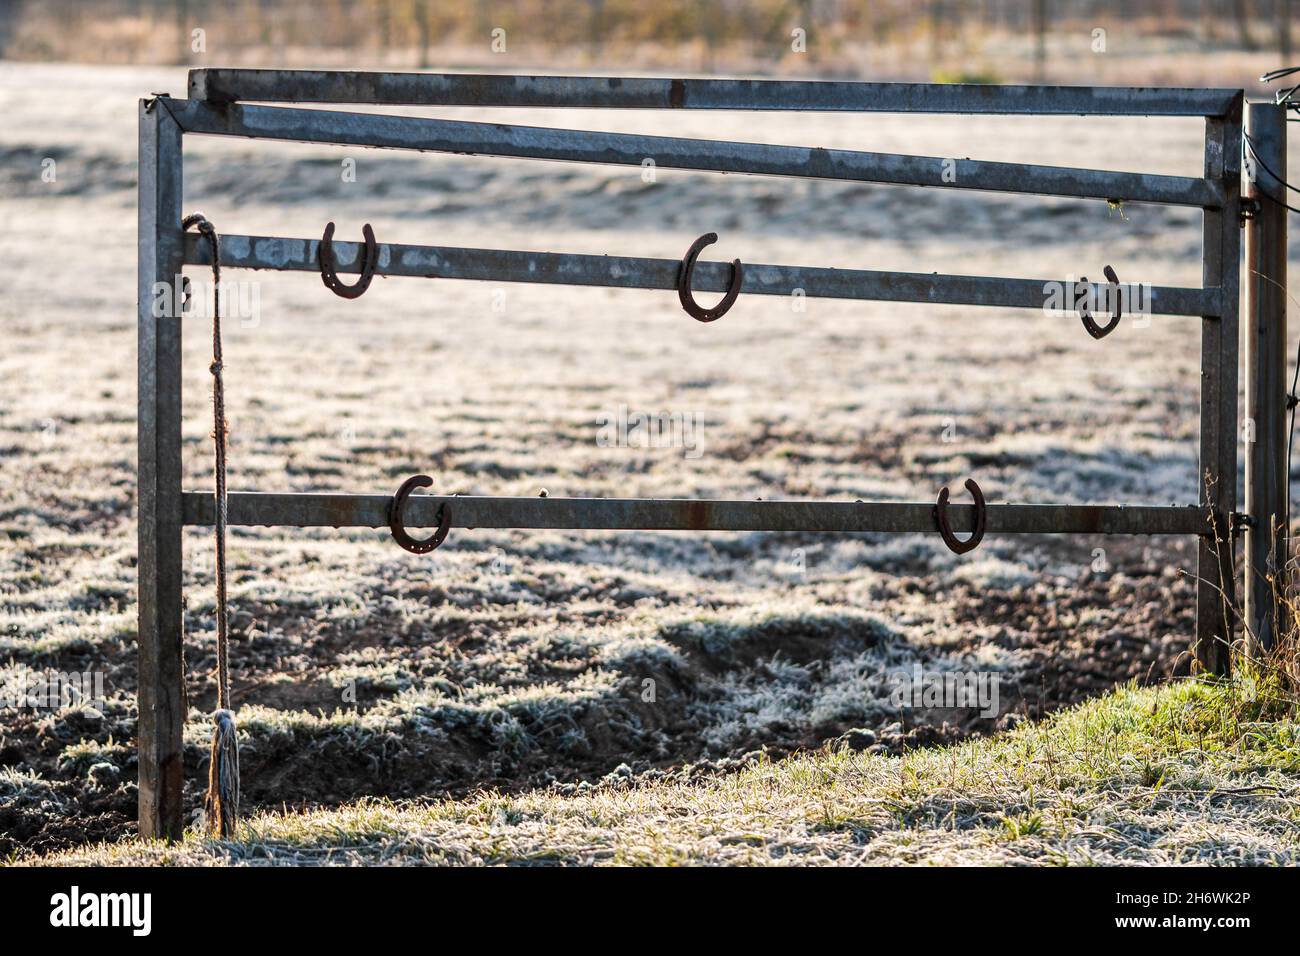 Fers à cheval suspendus sur une barrière de pâturage en métal lors d'un matin d'hiver ensoleillé.Symbole de bonne chance, charme chanceux dans les sports équestres et l'élevage de chevaux. Banque D'Images